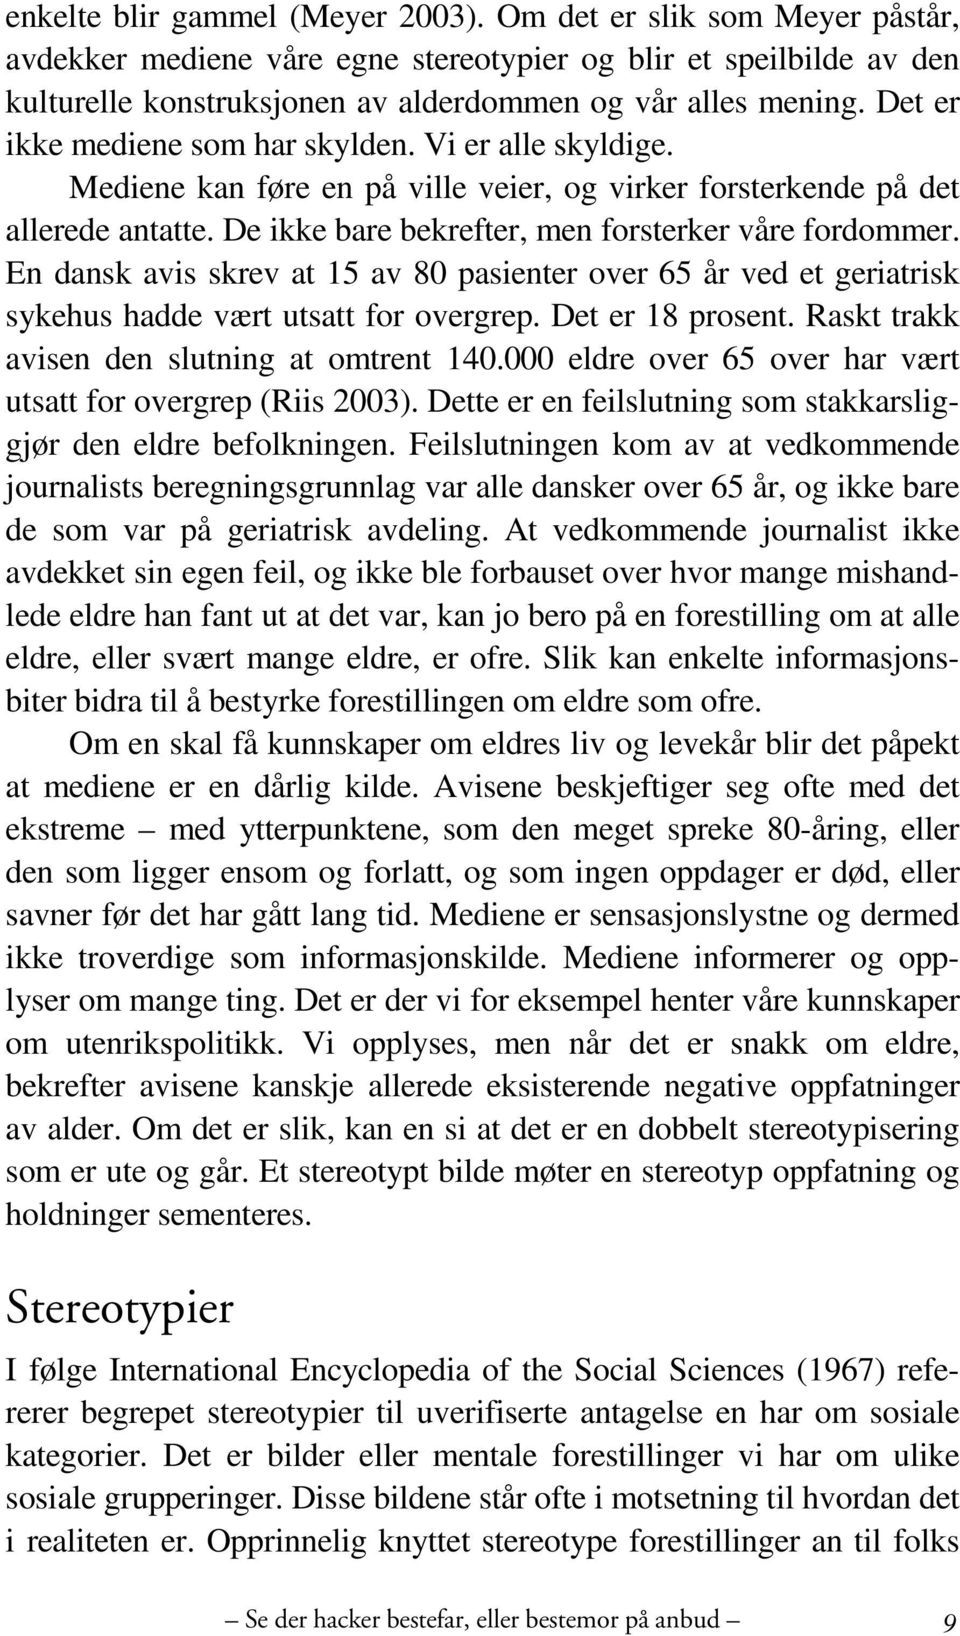 En dansk avis skrev at 15 av 80 pasienter over 65 år ved et geriatrisk sykehus hadde vært utsatt for overgrep. Det er 18 prosent. Raskt trakk avisen den slutning at omtrent 140.